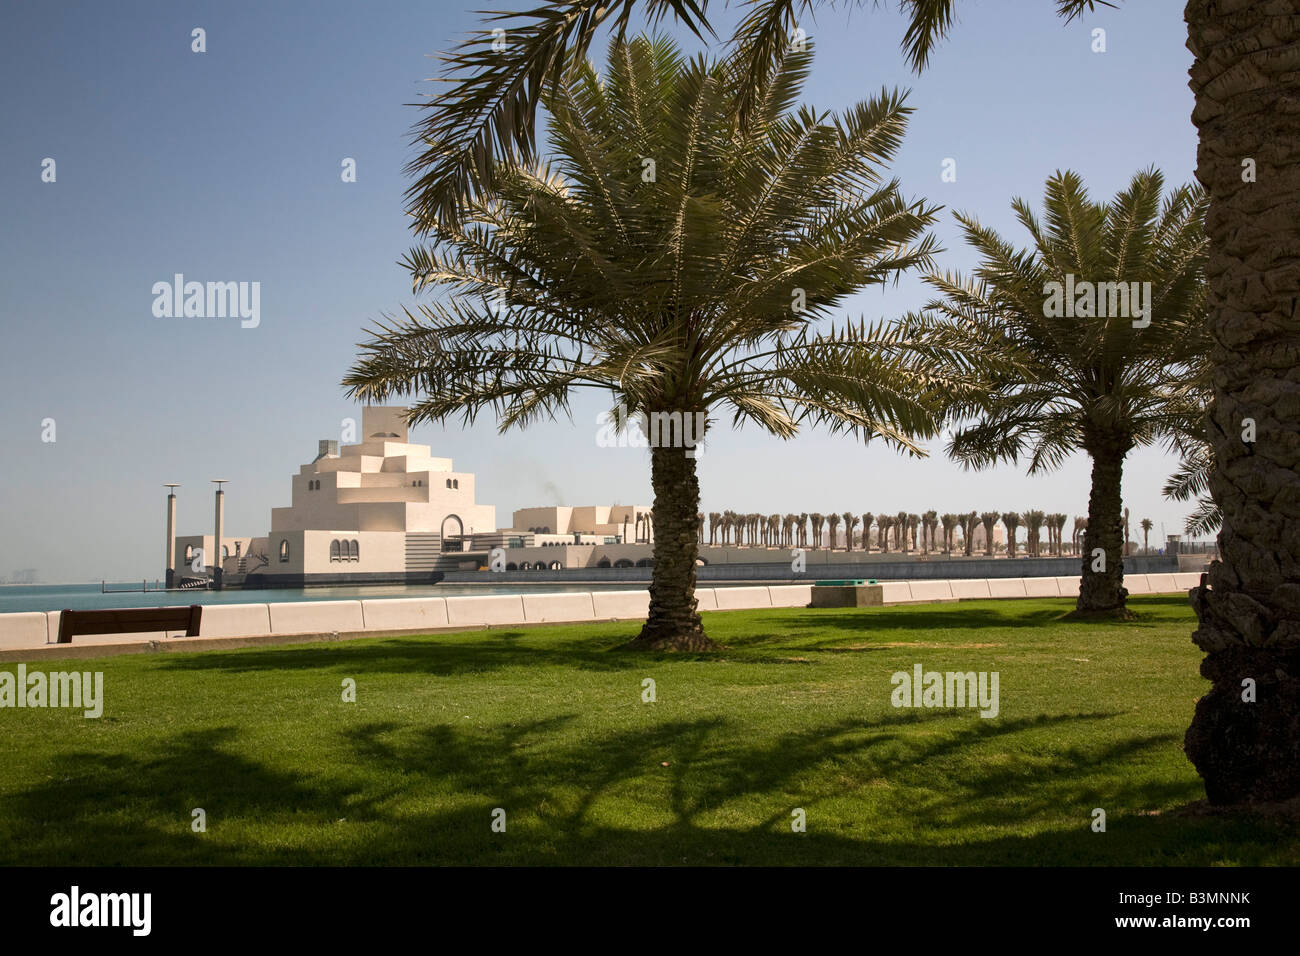 Nouveau Musée d'Art islamique de Doha Qatar Doha Bay Moyen-orient Golfe Arabo-Persique Corniche Skyline Skyline Banque D'Images